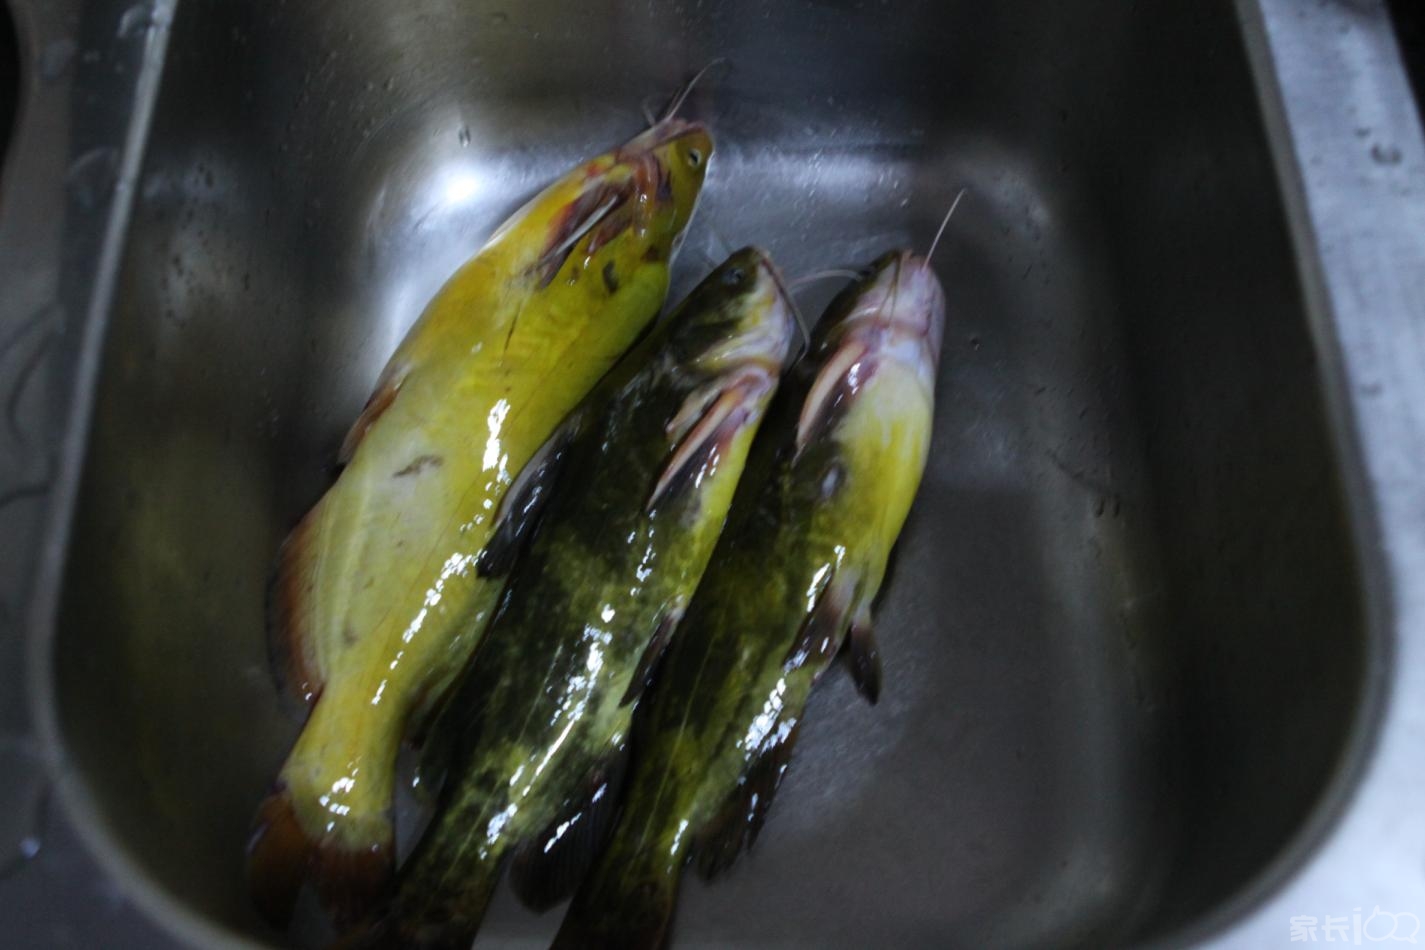 3条黄姑鱼大约一斤七两的样子,还是活的;在池子里还在蹦呢.